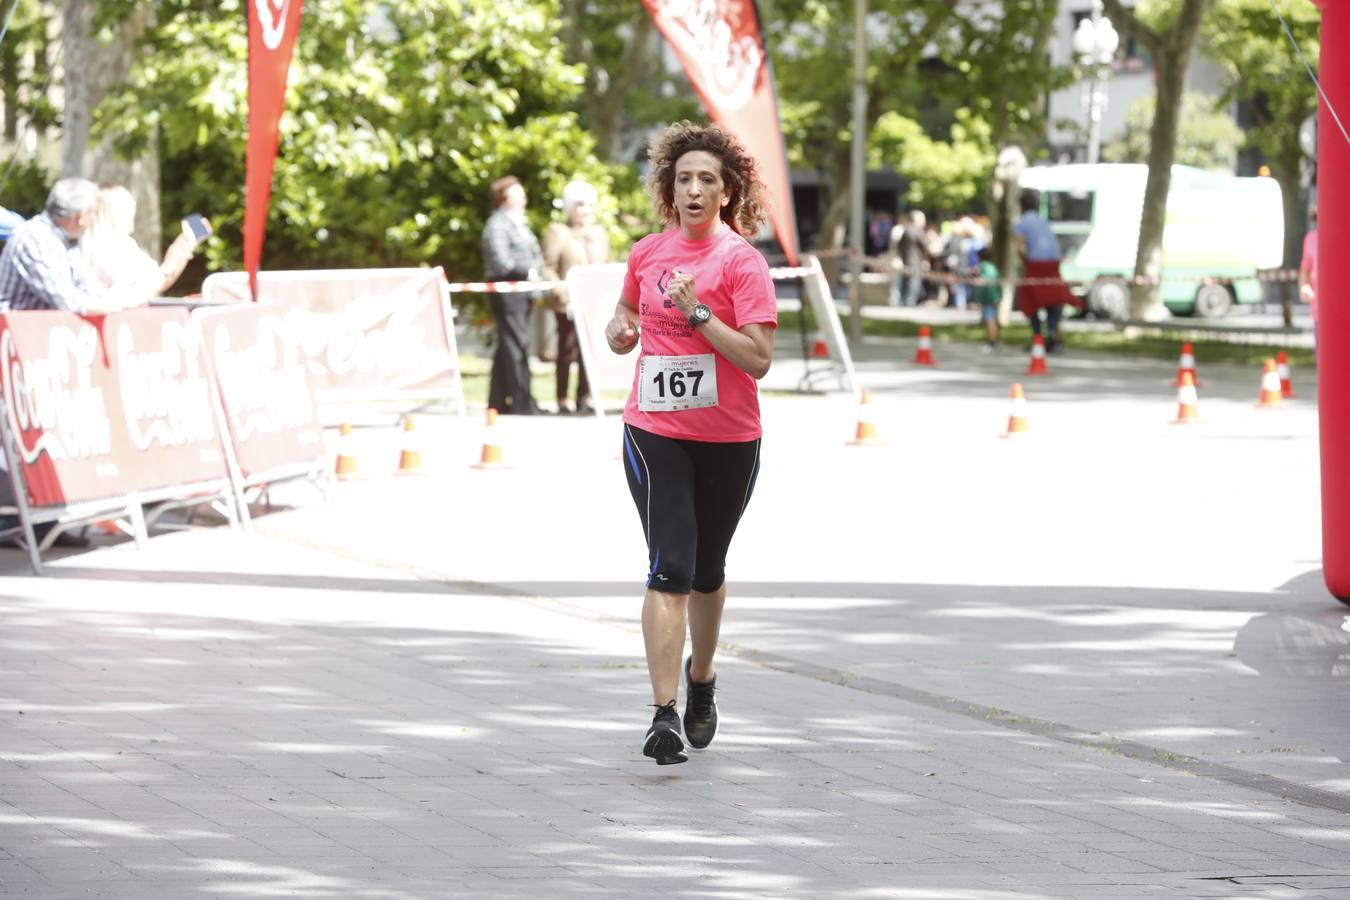 La atleta del club Atletaria Isaac Viciosa, Andrea Román, con un tiempo de 22.05, fue la ganadora de la tercera edición de la Carrera de las Mujeres que se disputó el domingo en las calles de Valladolid.